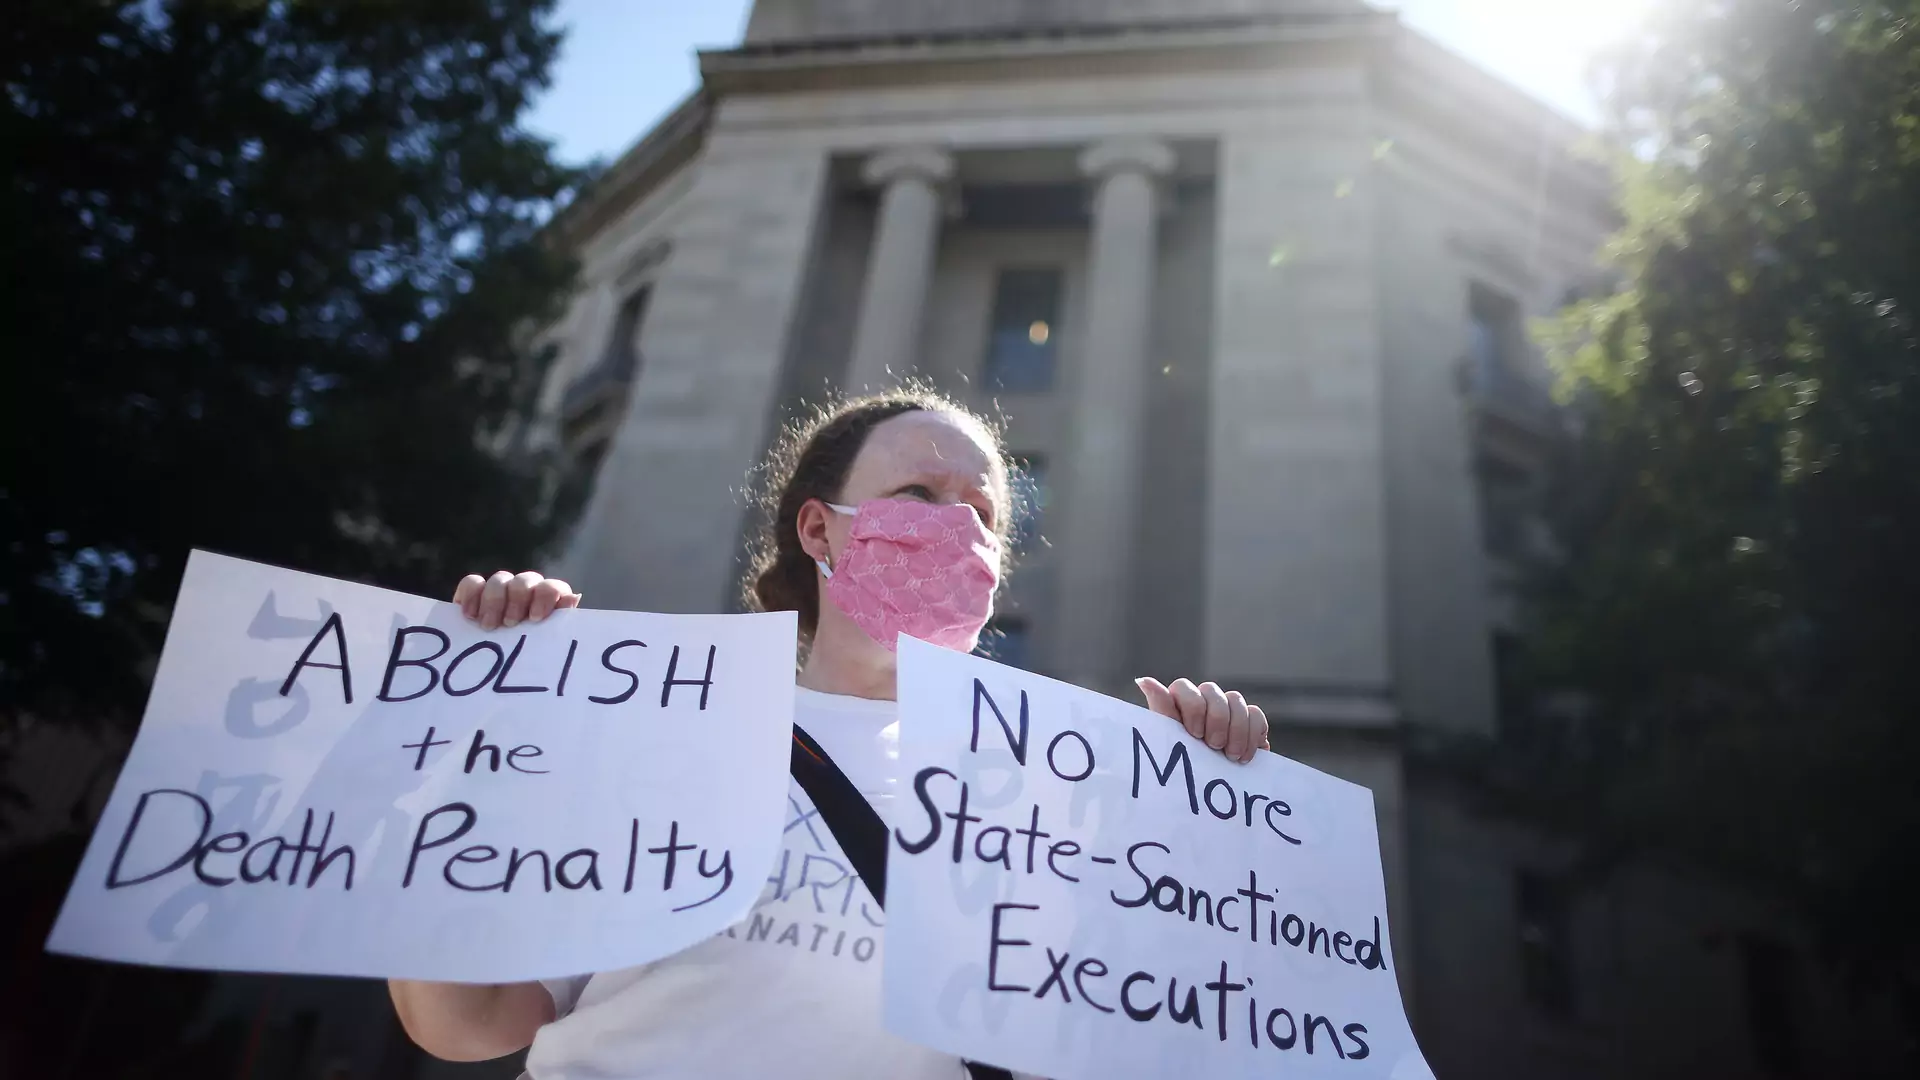 Sąd w USA wstrzymał wykonanie kary śmierci, ale egzekucja kobiety wciąż jest możliwa